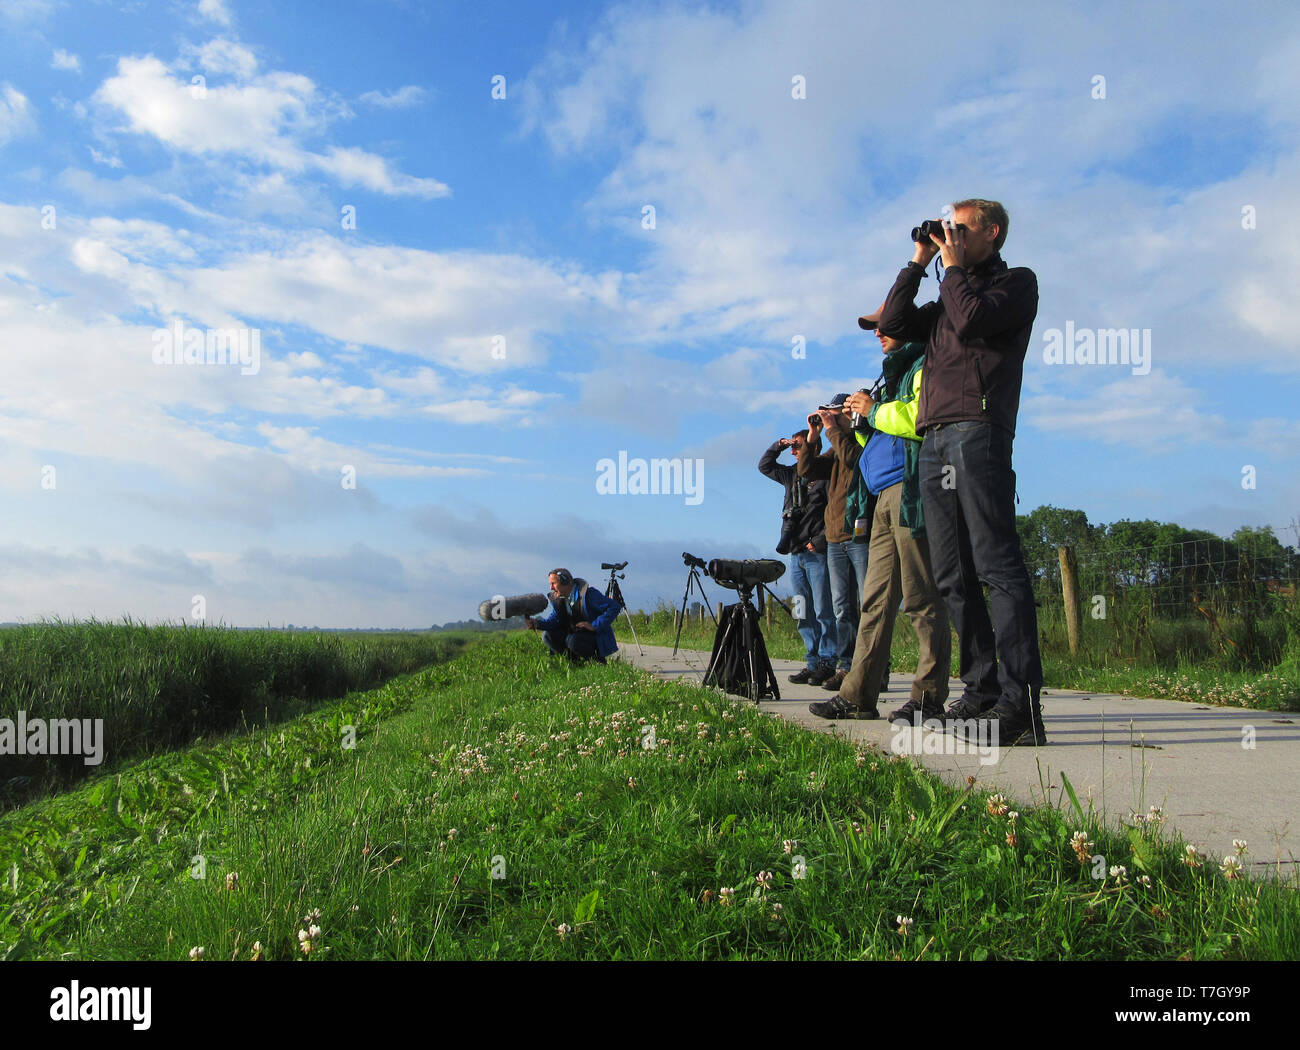 Groupe d'ornithologues échouage sur une digue au bord du Parc National de la "Wieden" dans l'Overijssel, Pays-Bas. Regarder les oiseaux aquatiques et wildlif Banque D'Images